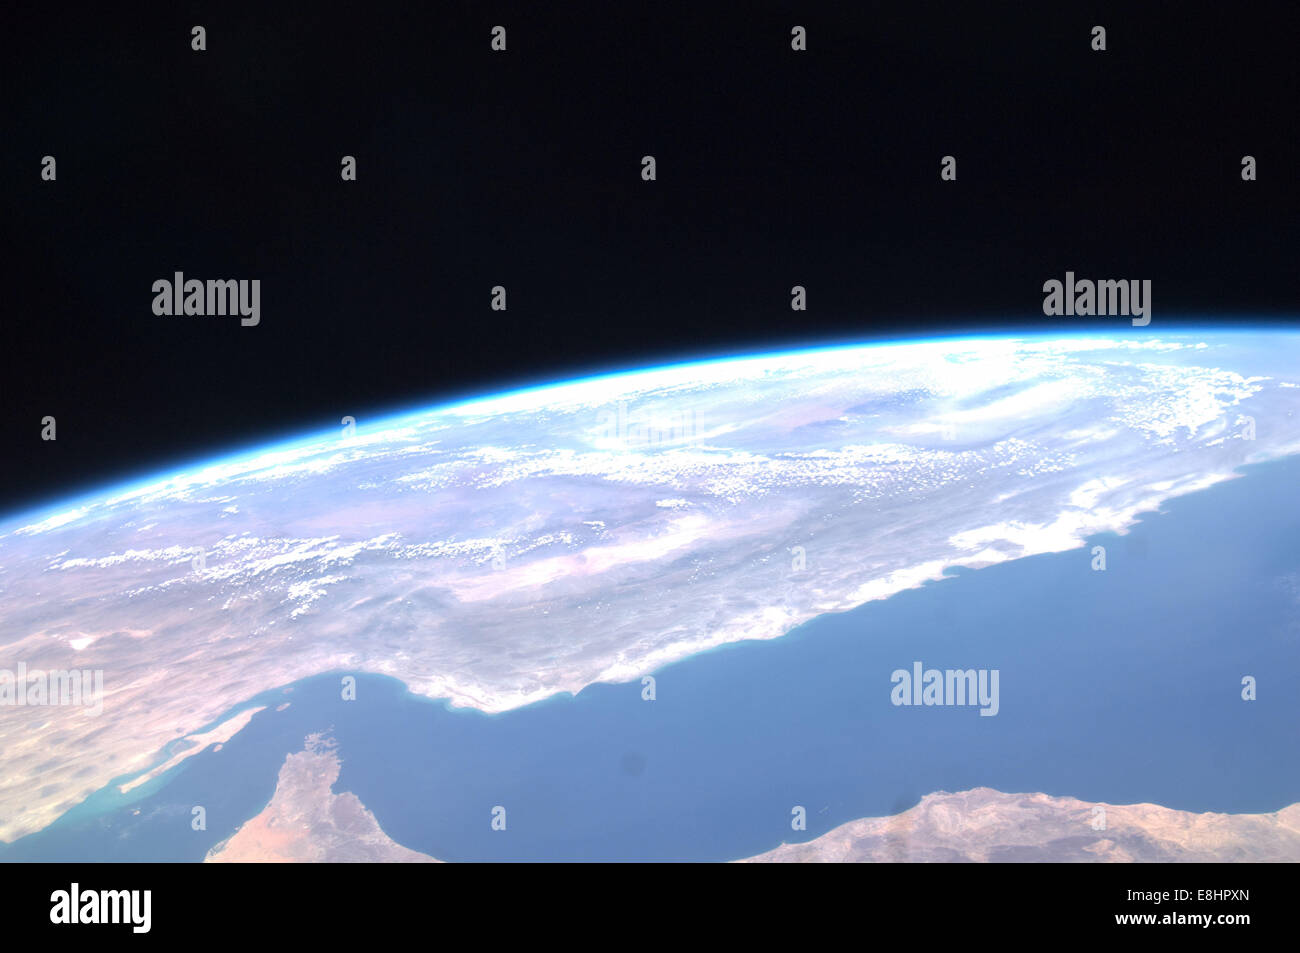 Cette image de l'expédition 31 à bord de la Station spatiale internationale montre une vue panoramique de l'Iran qui inclut le golfe d'Om Banque D'Images